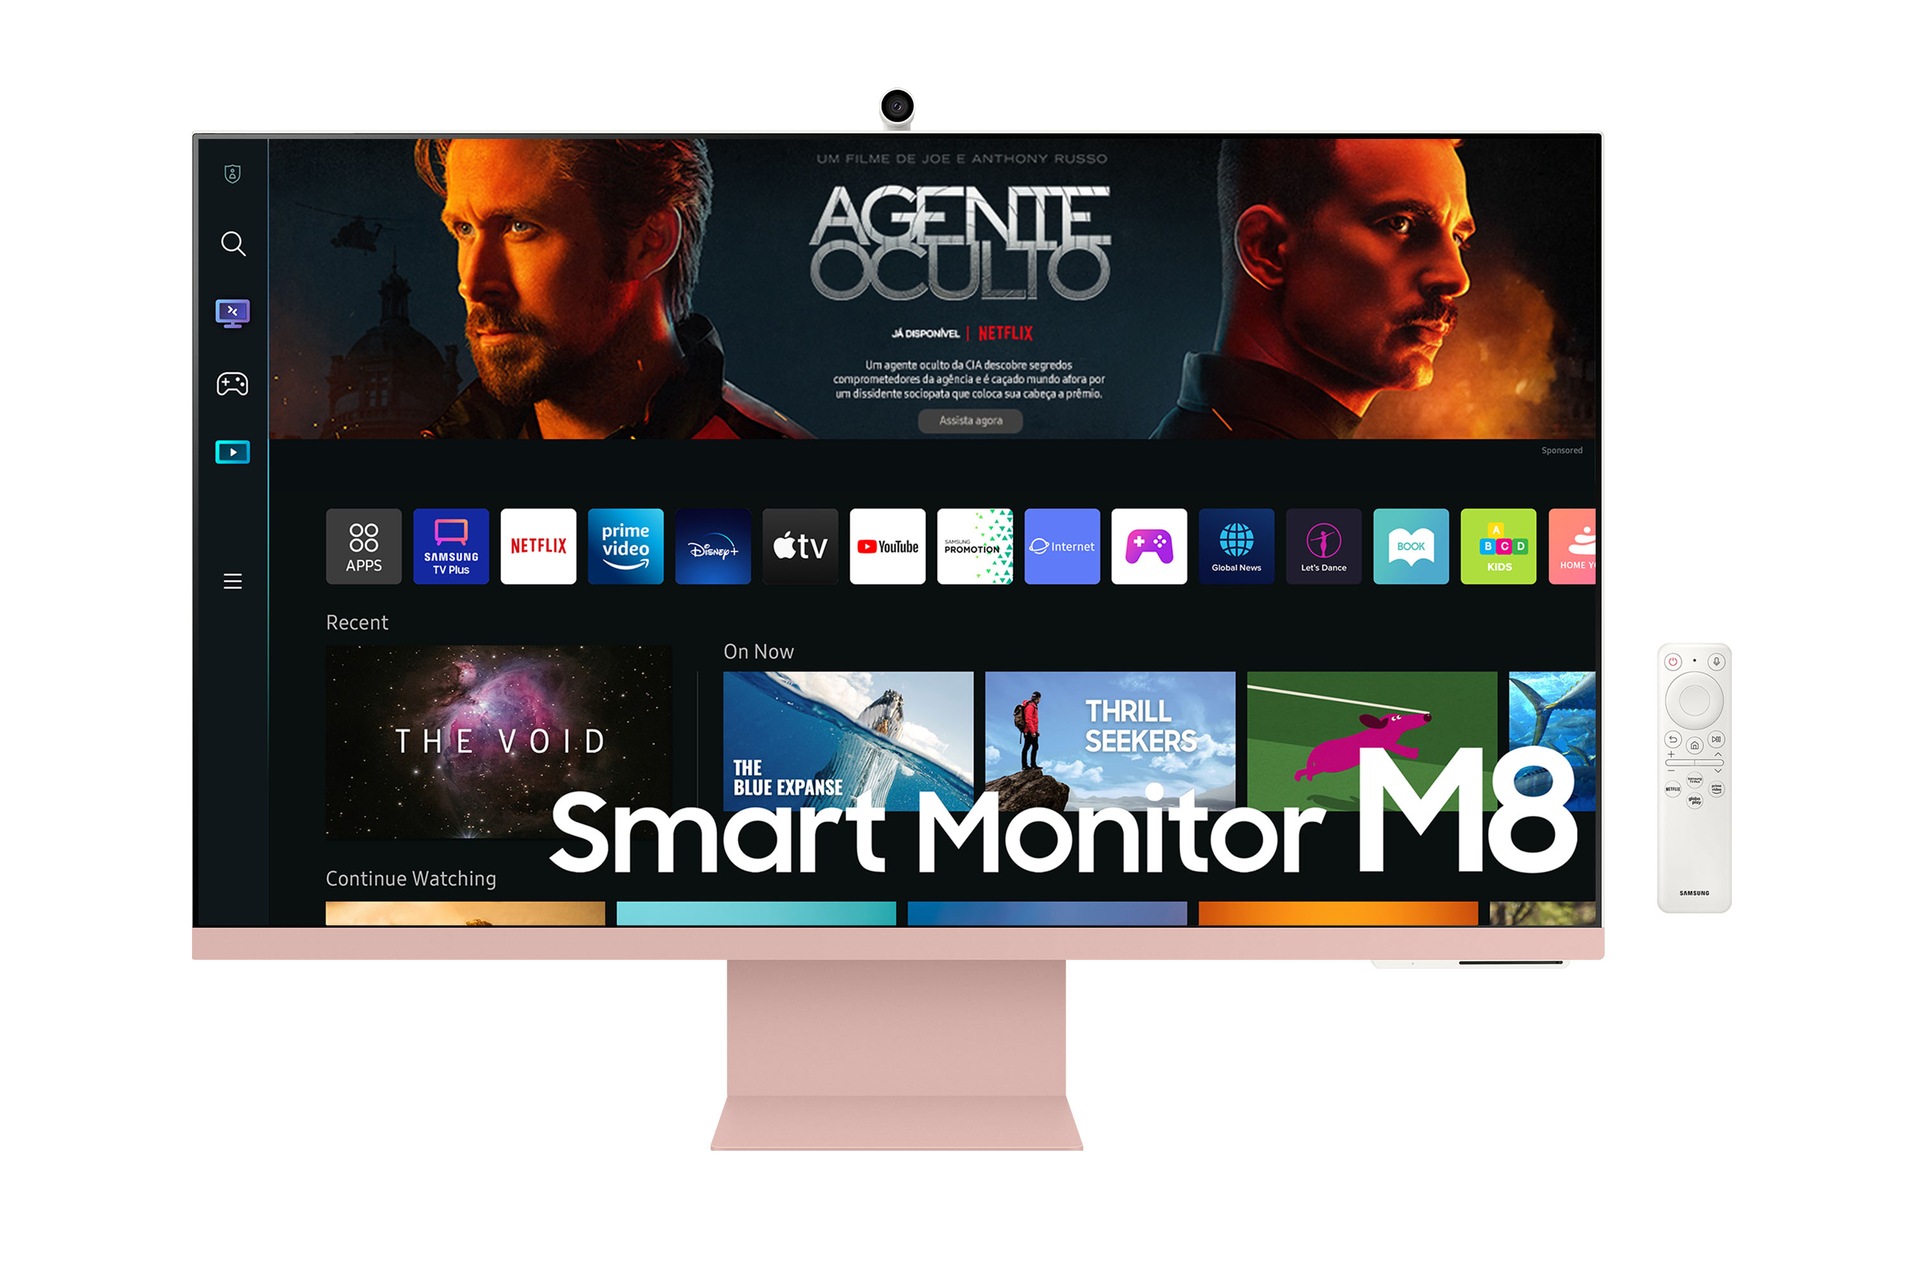 Monitor IPS 27  Samsung QHD ViewFinity S6 com o Melhor Preço é no Zoom